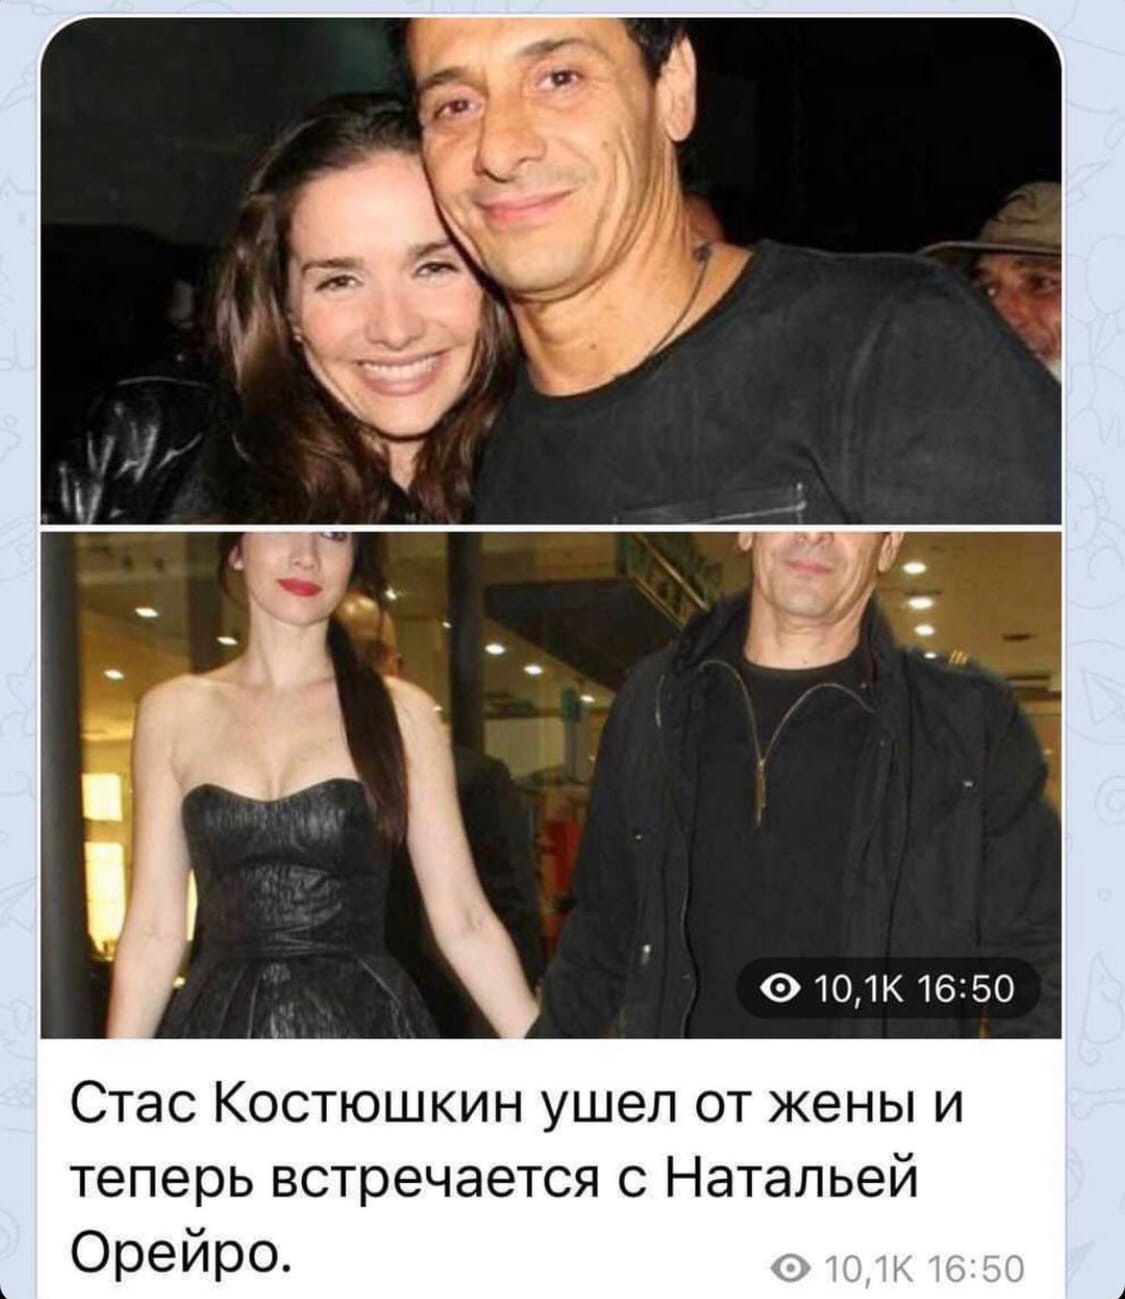 Стас Костюшкин рассказал о своих отношениях с Натальей Орейро